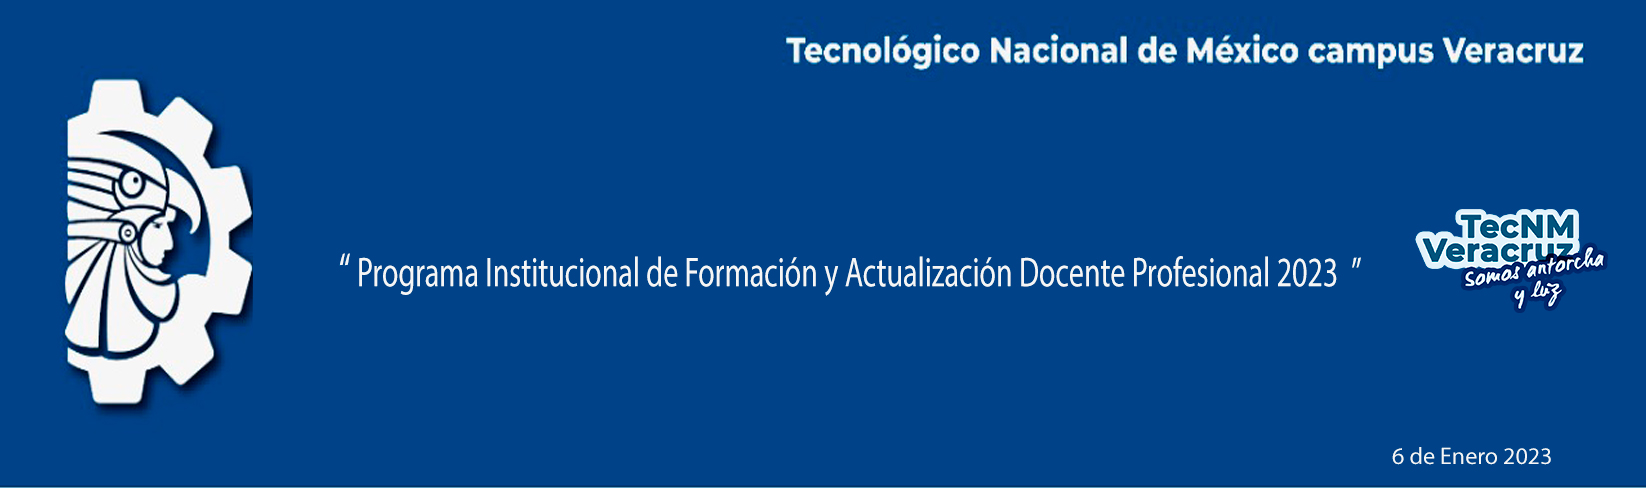 Programa Institucional de Formación y Actualización Docente Profesional 2023-1 ITV-AC-PO-005-02 DDA